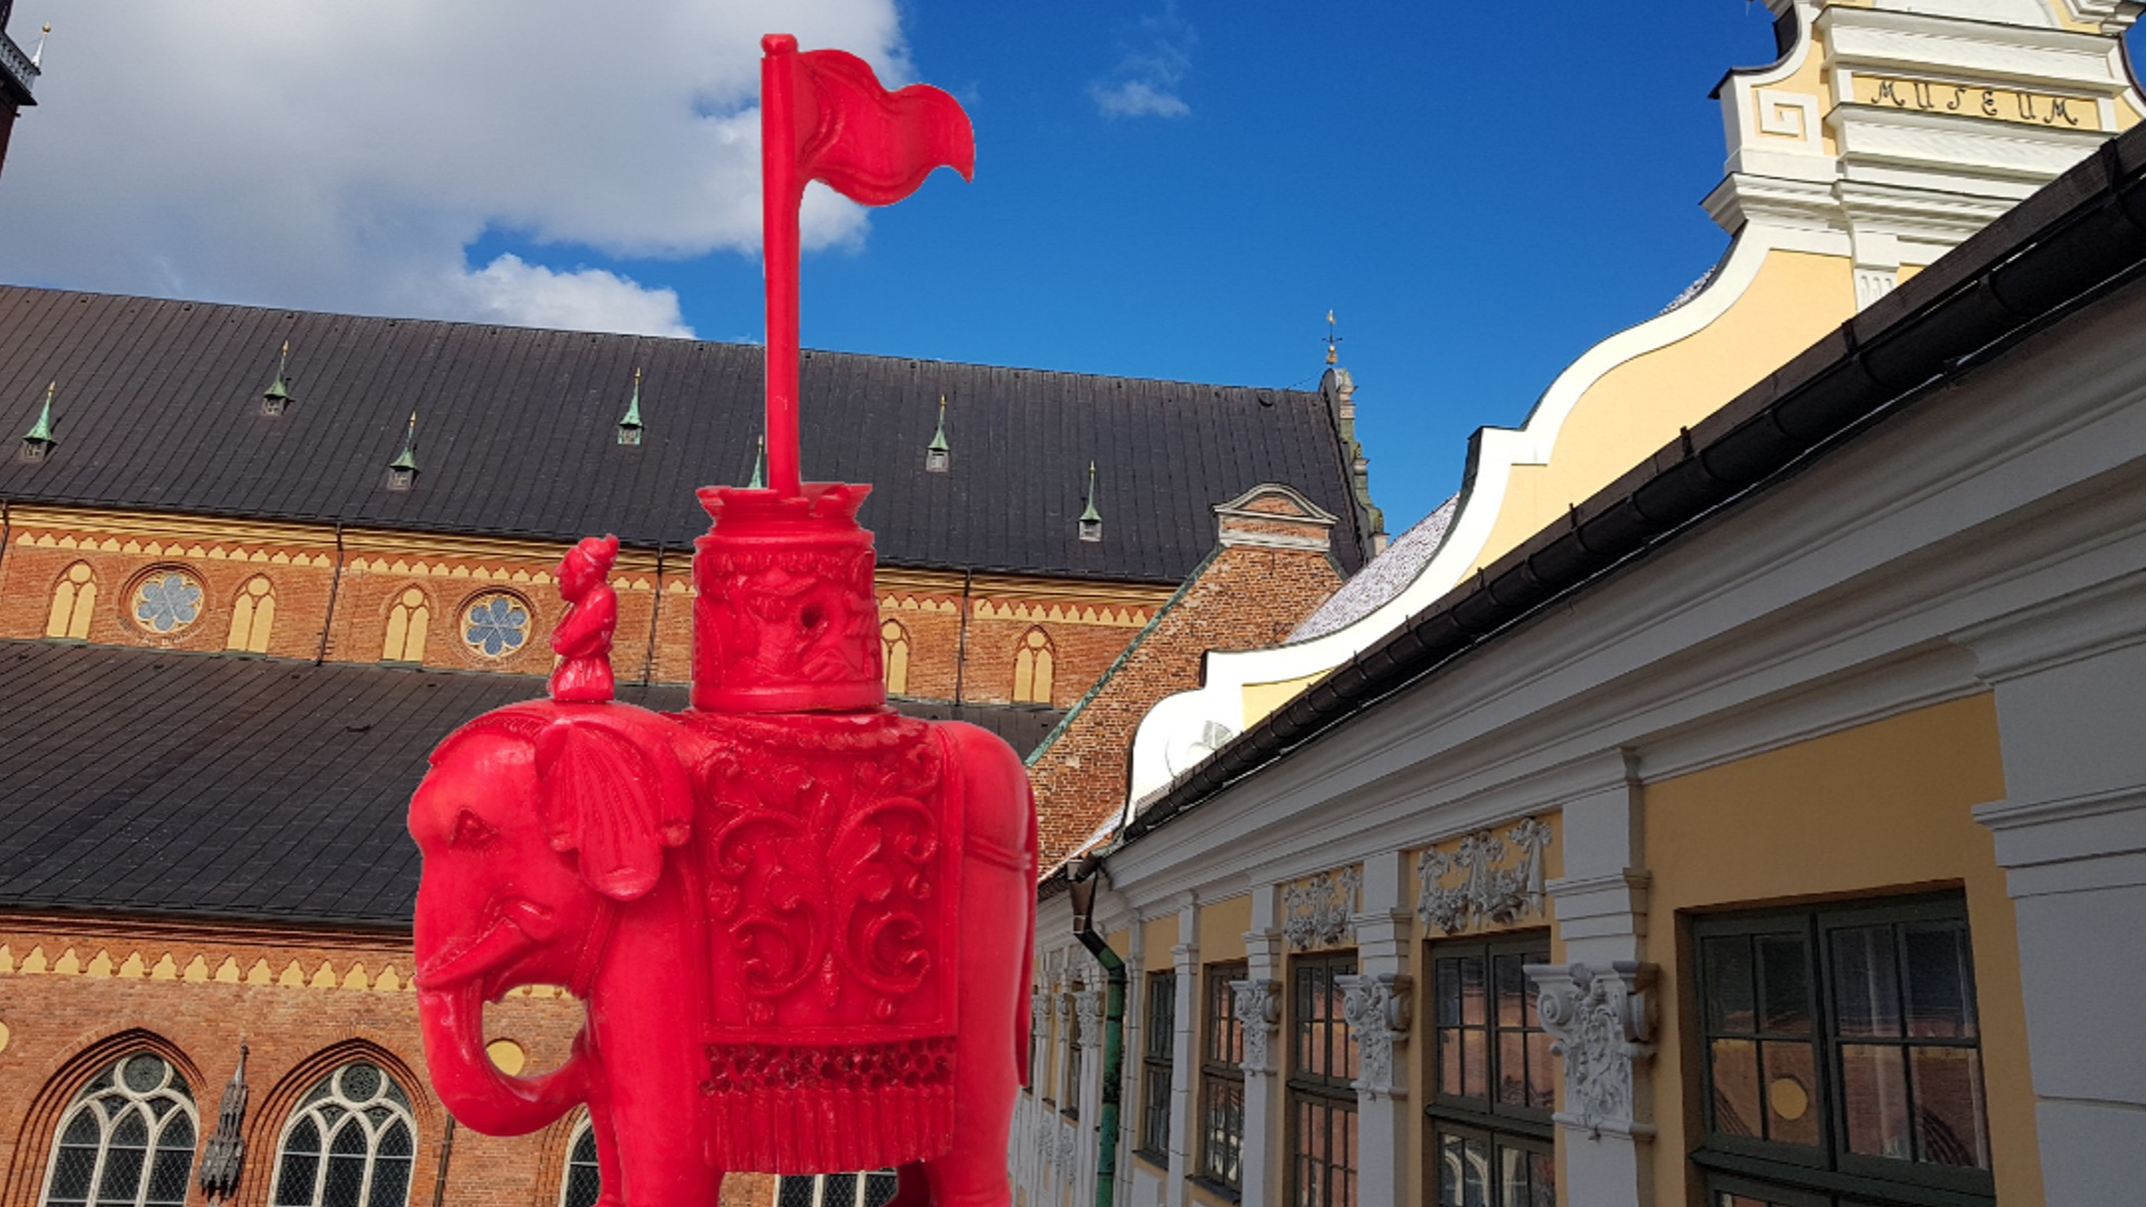 Brīvlaikā – 16., 17., 18. martā – uz tematiskām ekskursijām aicina Rīgas vēstures un kuģniecības muzejs